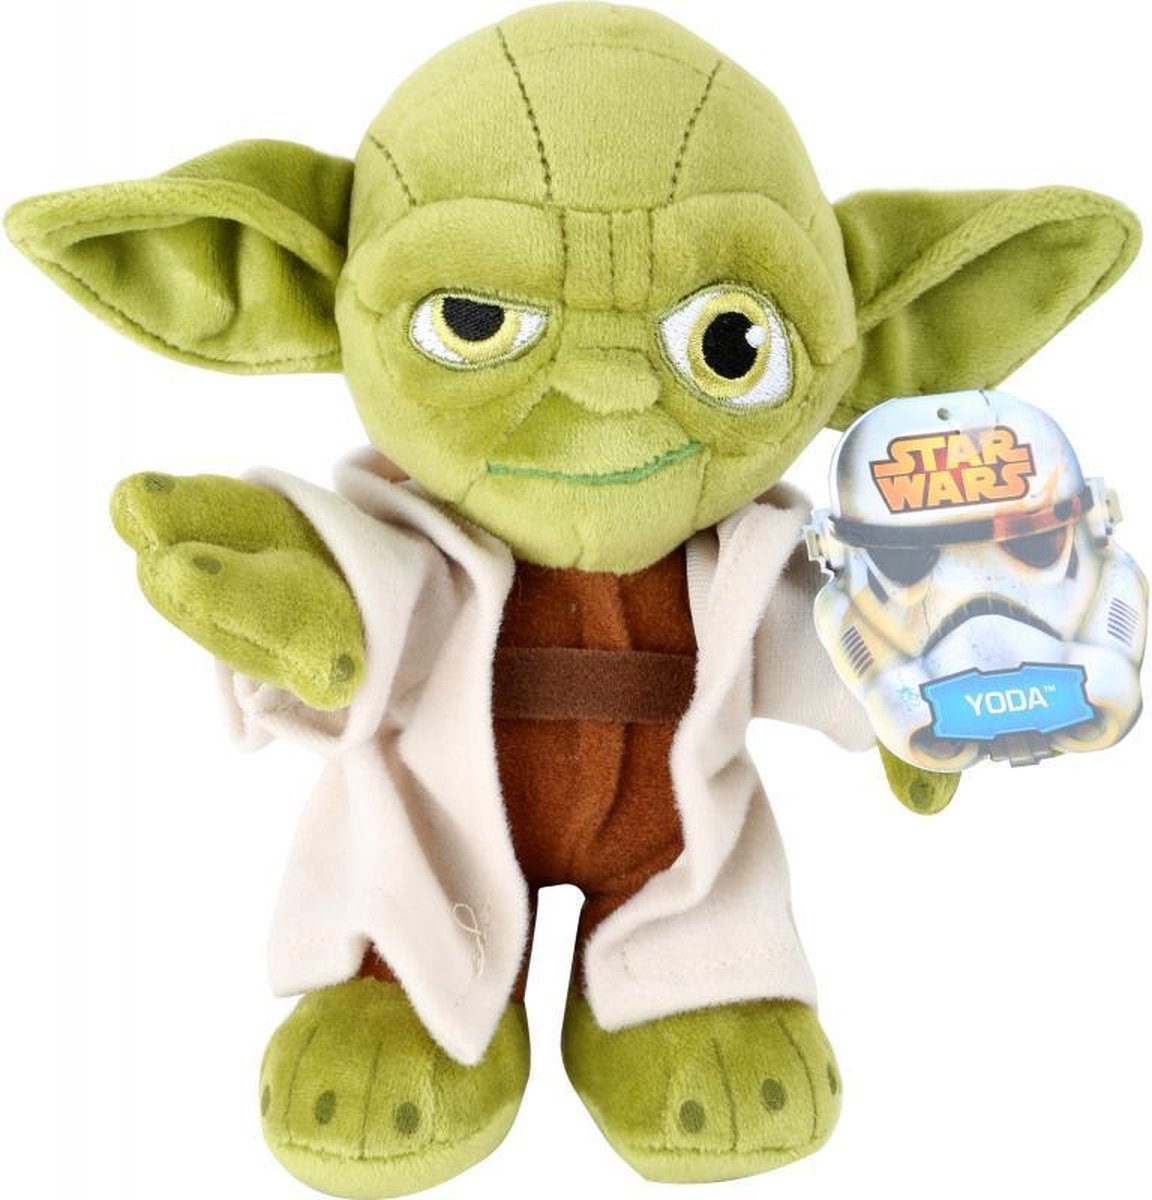 Star Wars Yoda Cuddly Toy 16cm